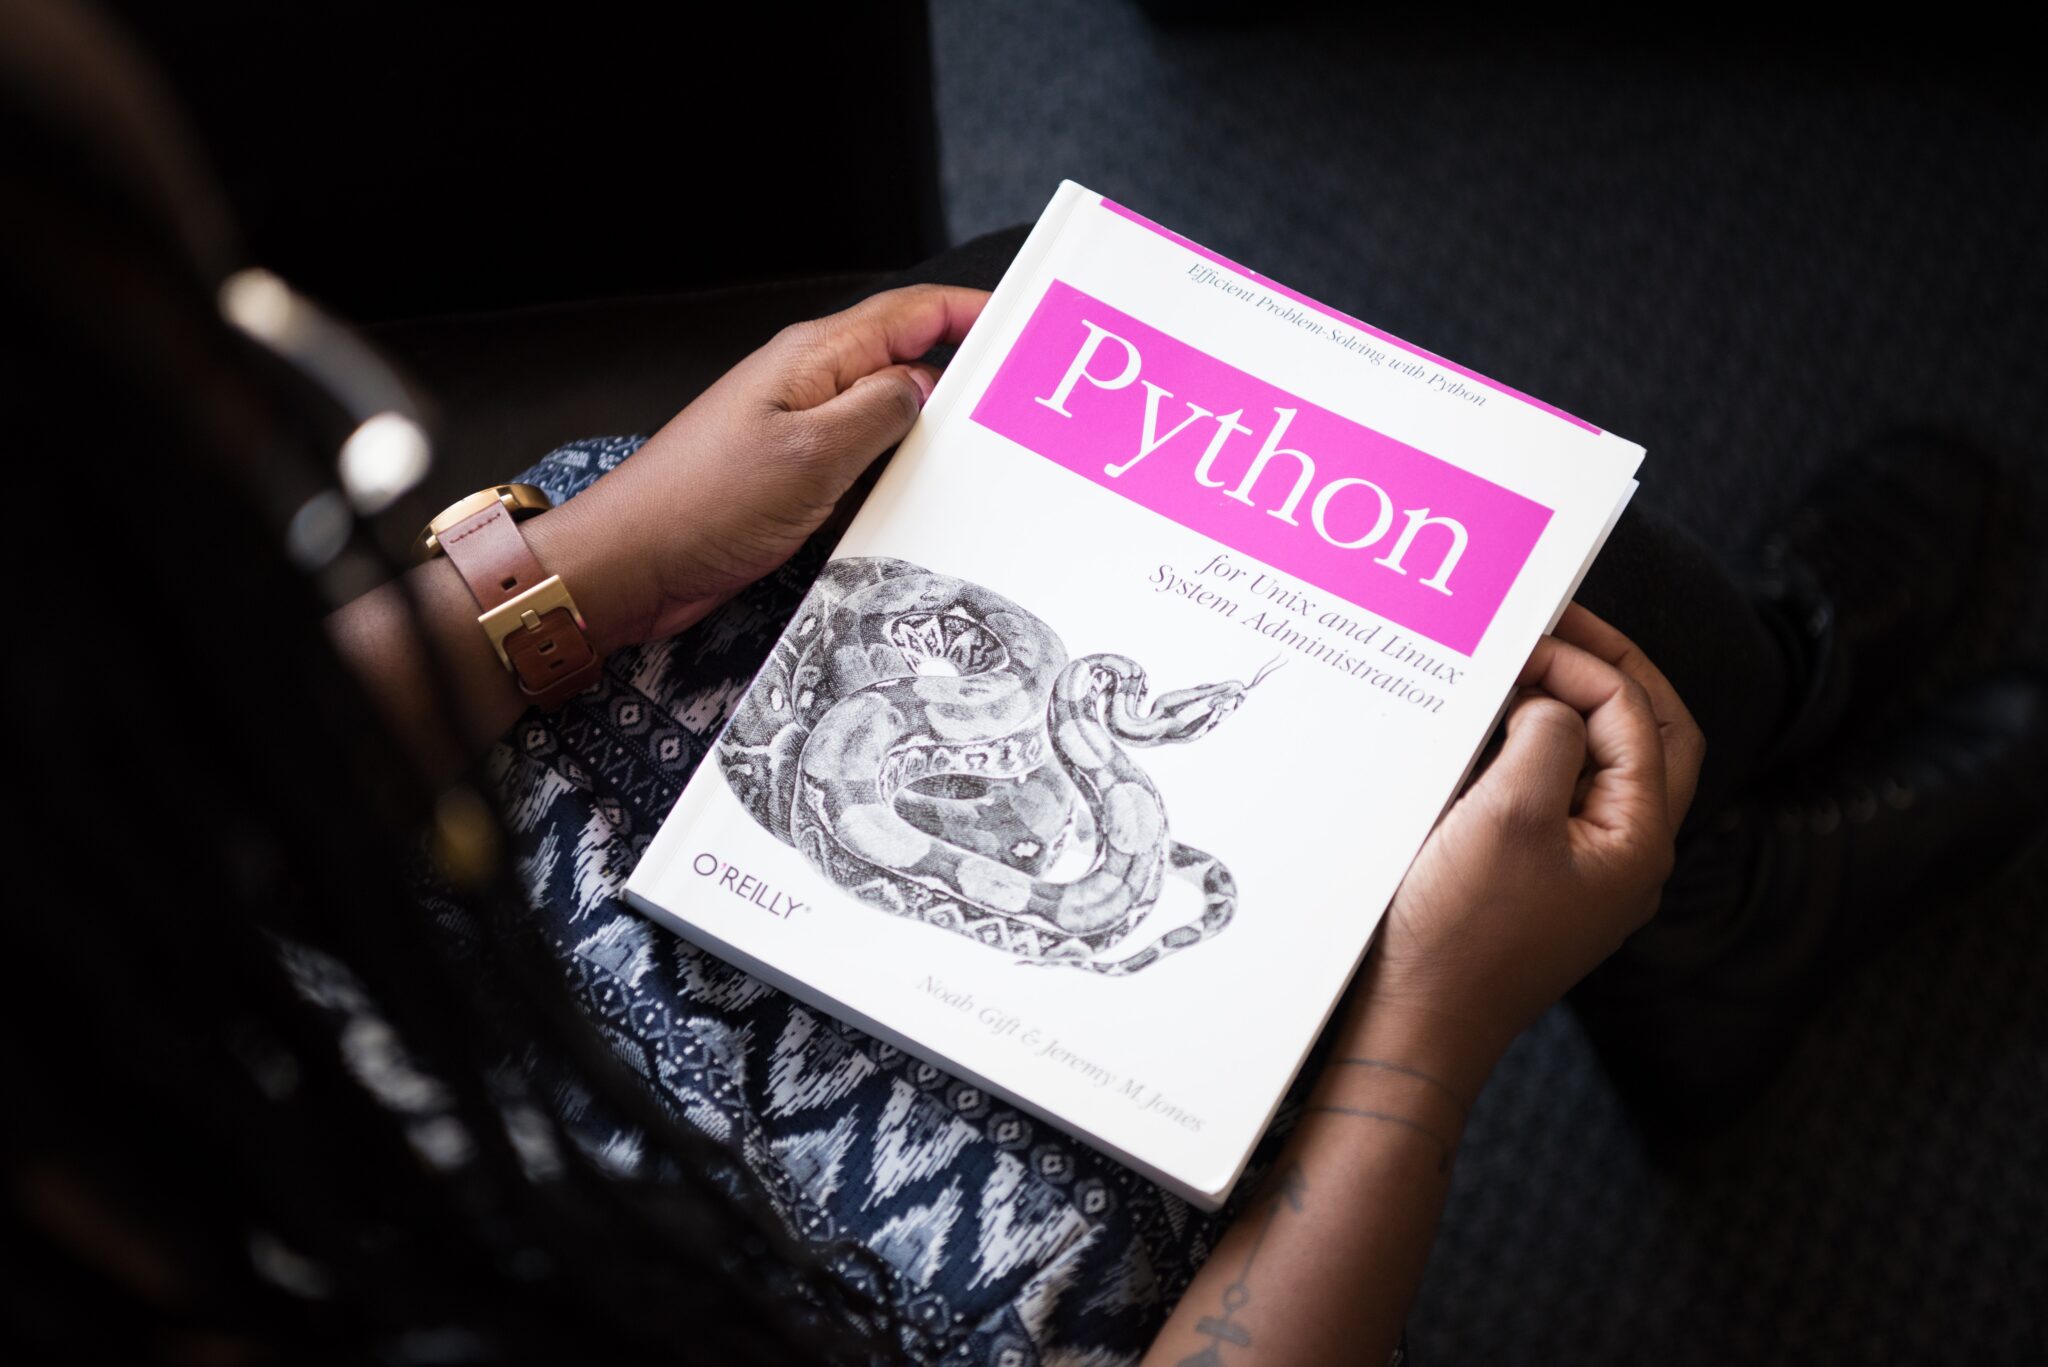 Pythonエンジニアの年収や仕事内容をIT経験者向けに徹底解説